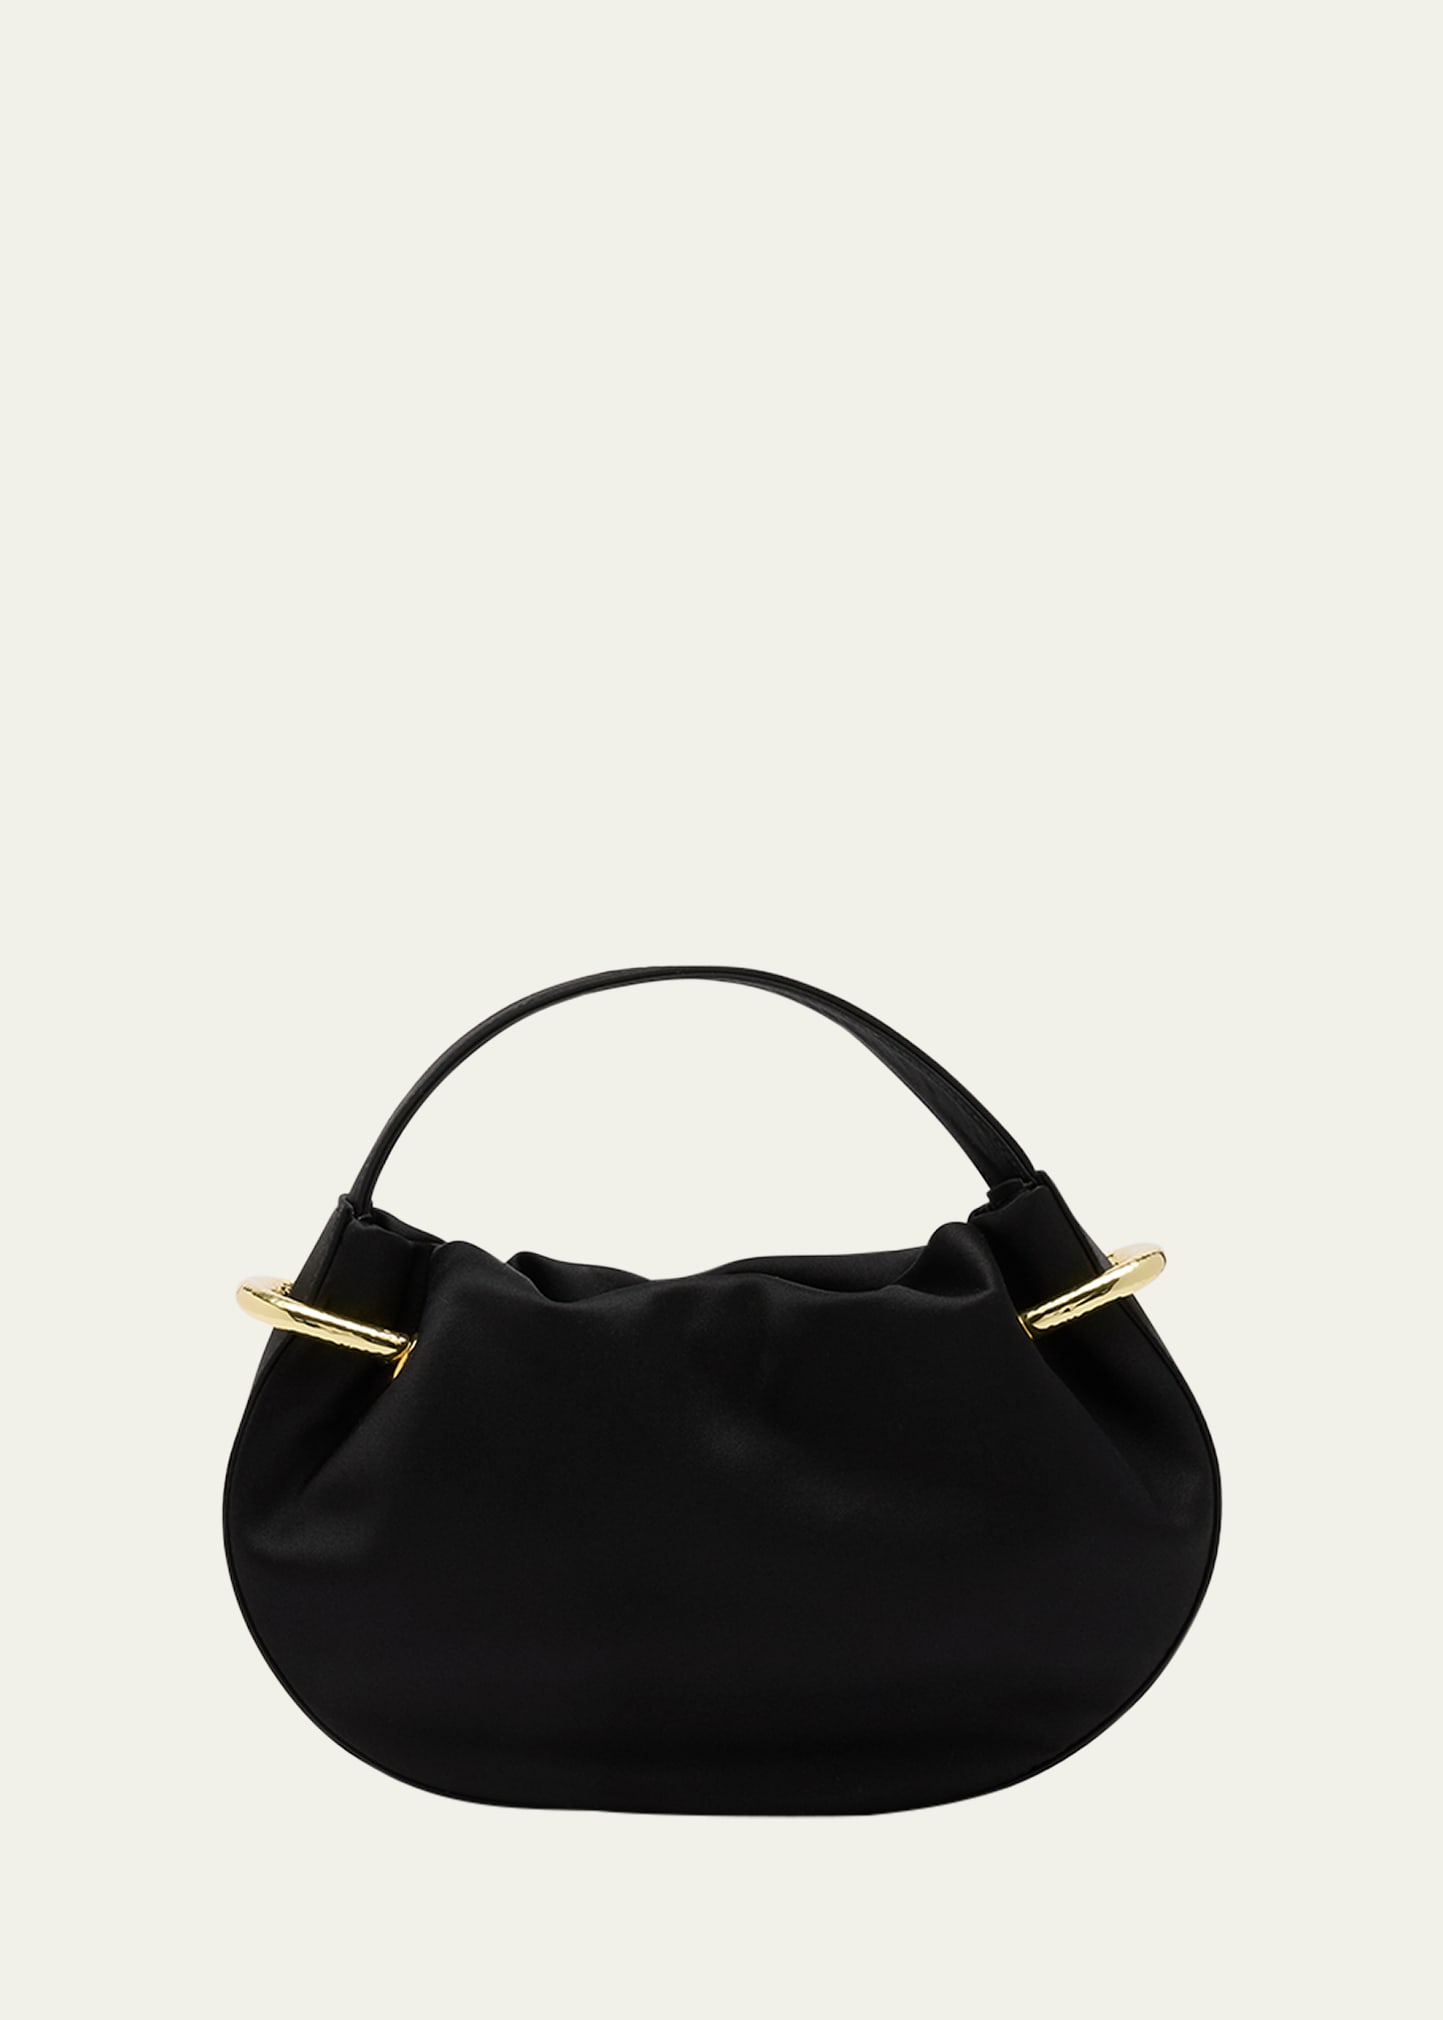 Tilda Mini Ruched Top-Handle Bag